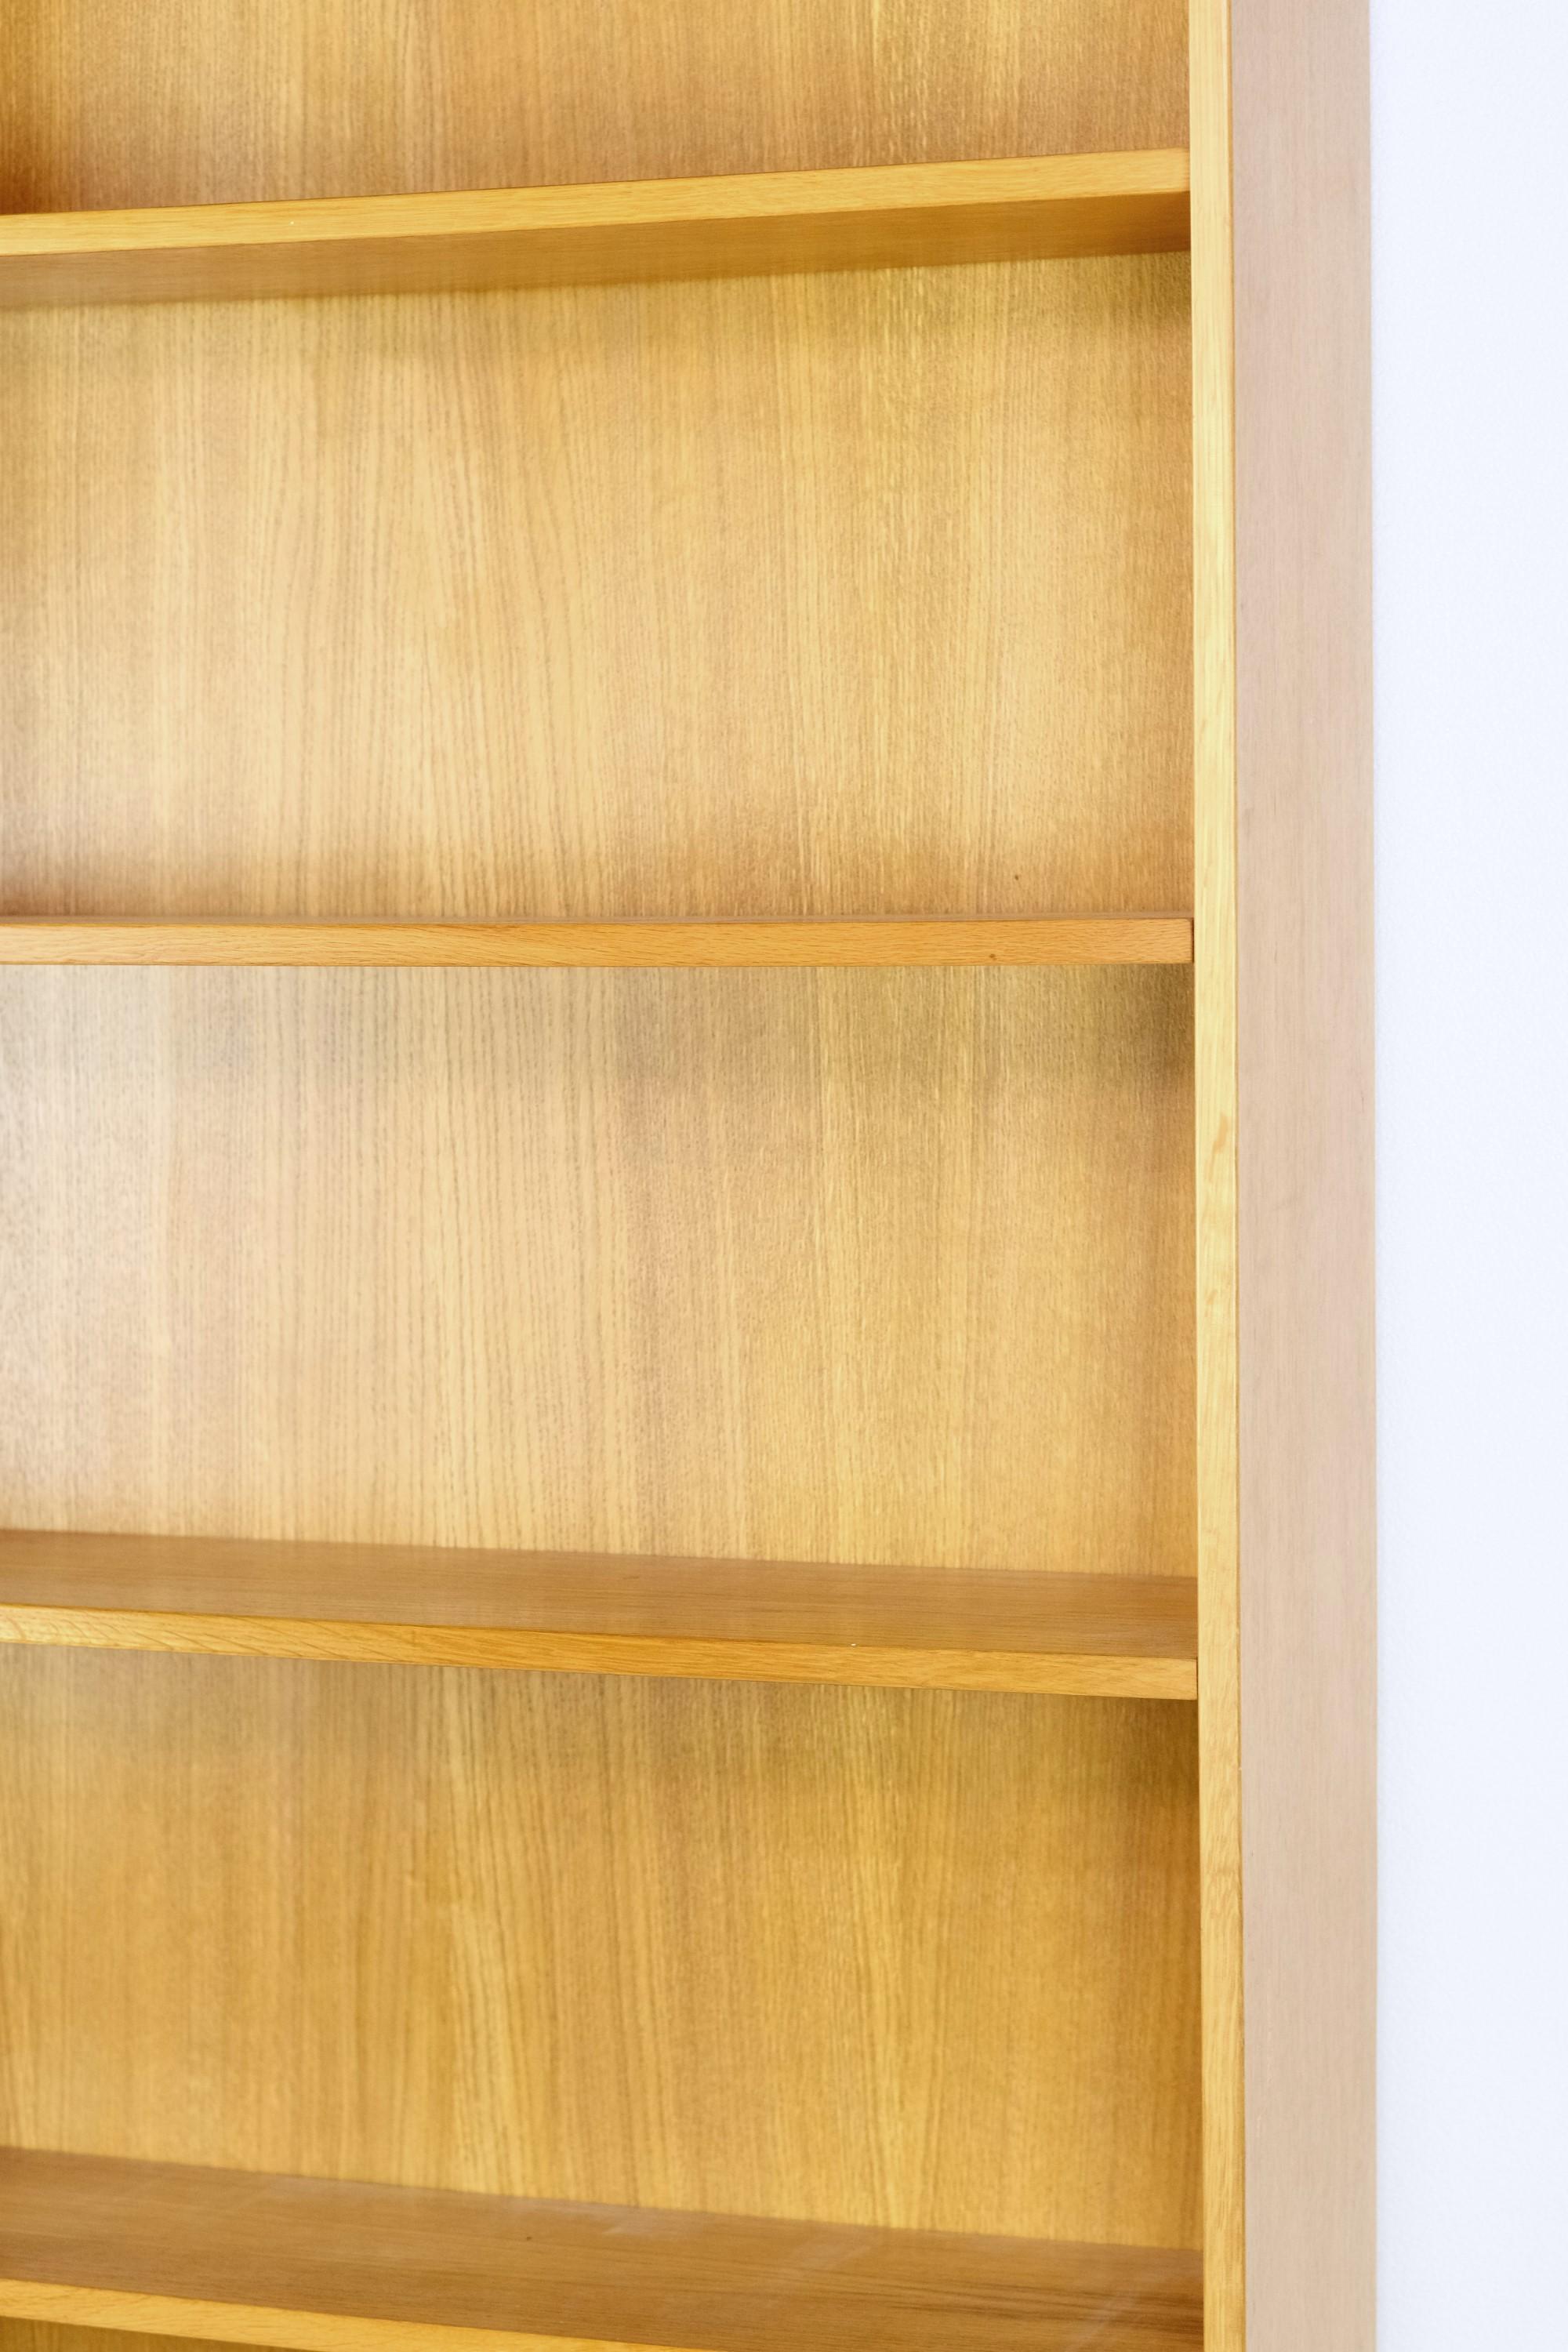 Cette bibliothèque en bois plaqué chêne de style moderne du milieu du siècle comporte six étagères réglables. Elle faisait autrefois partie de la bibliothèque personnelle d'un professeur de l'université de Columbia à New York. Cette bibliothèque